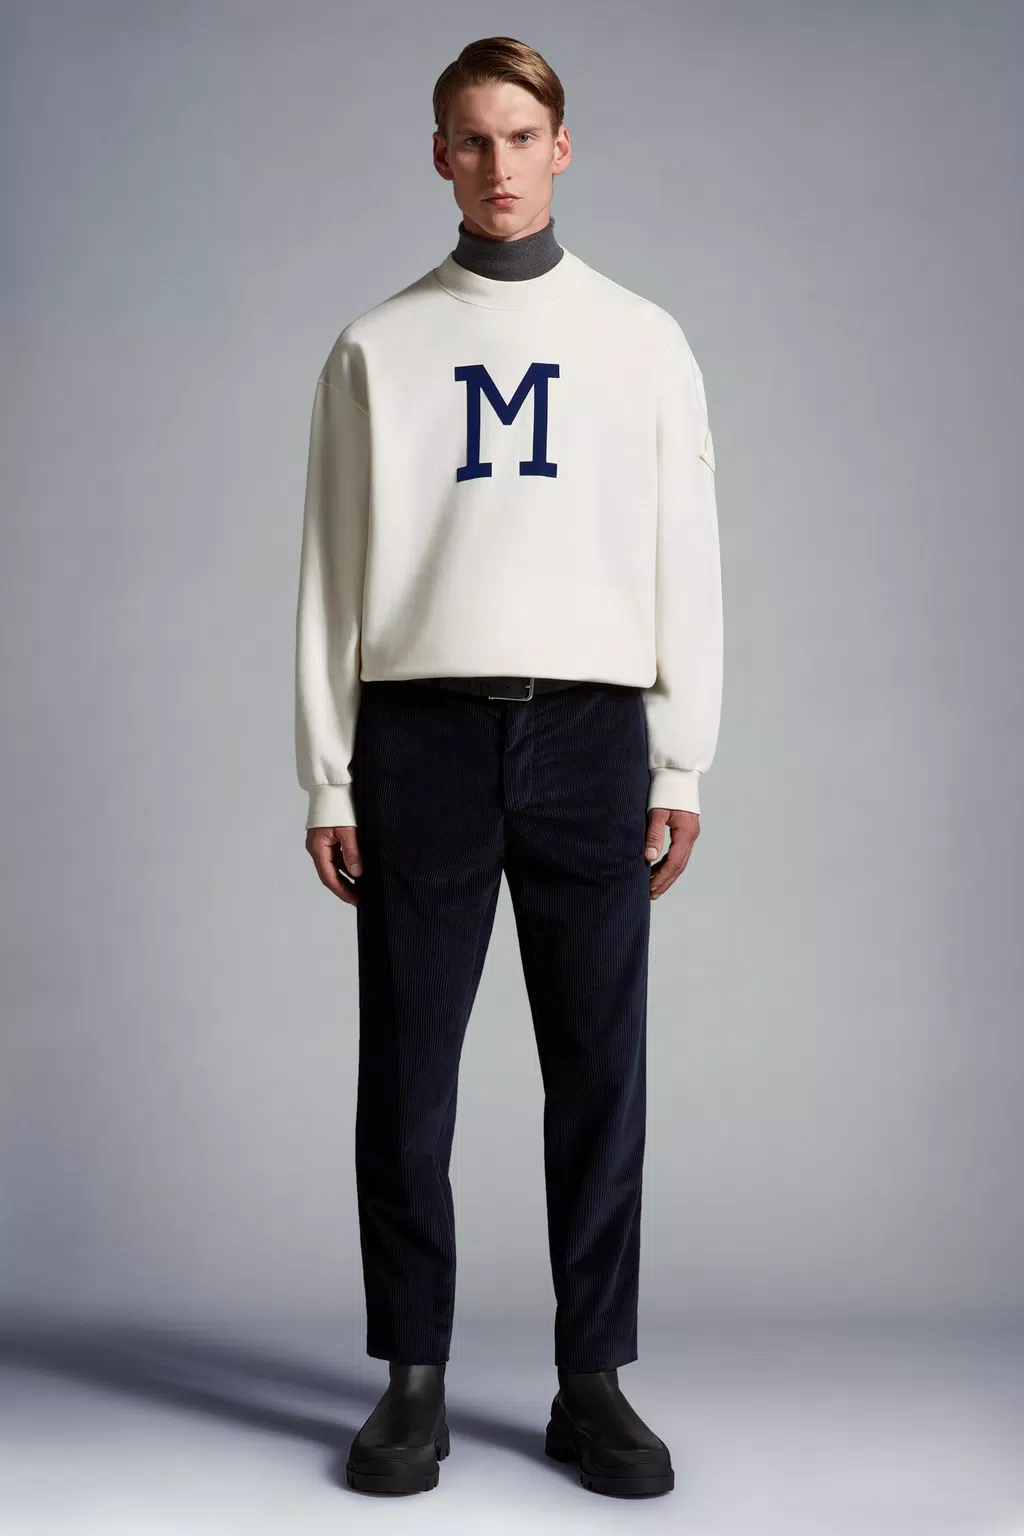 Buy Monogrammed Sweatshirt Monogram Sweater Crewneck Gift Online